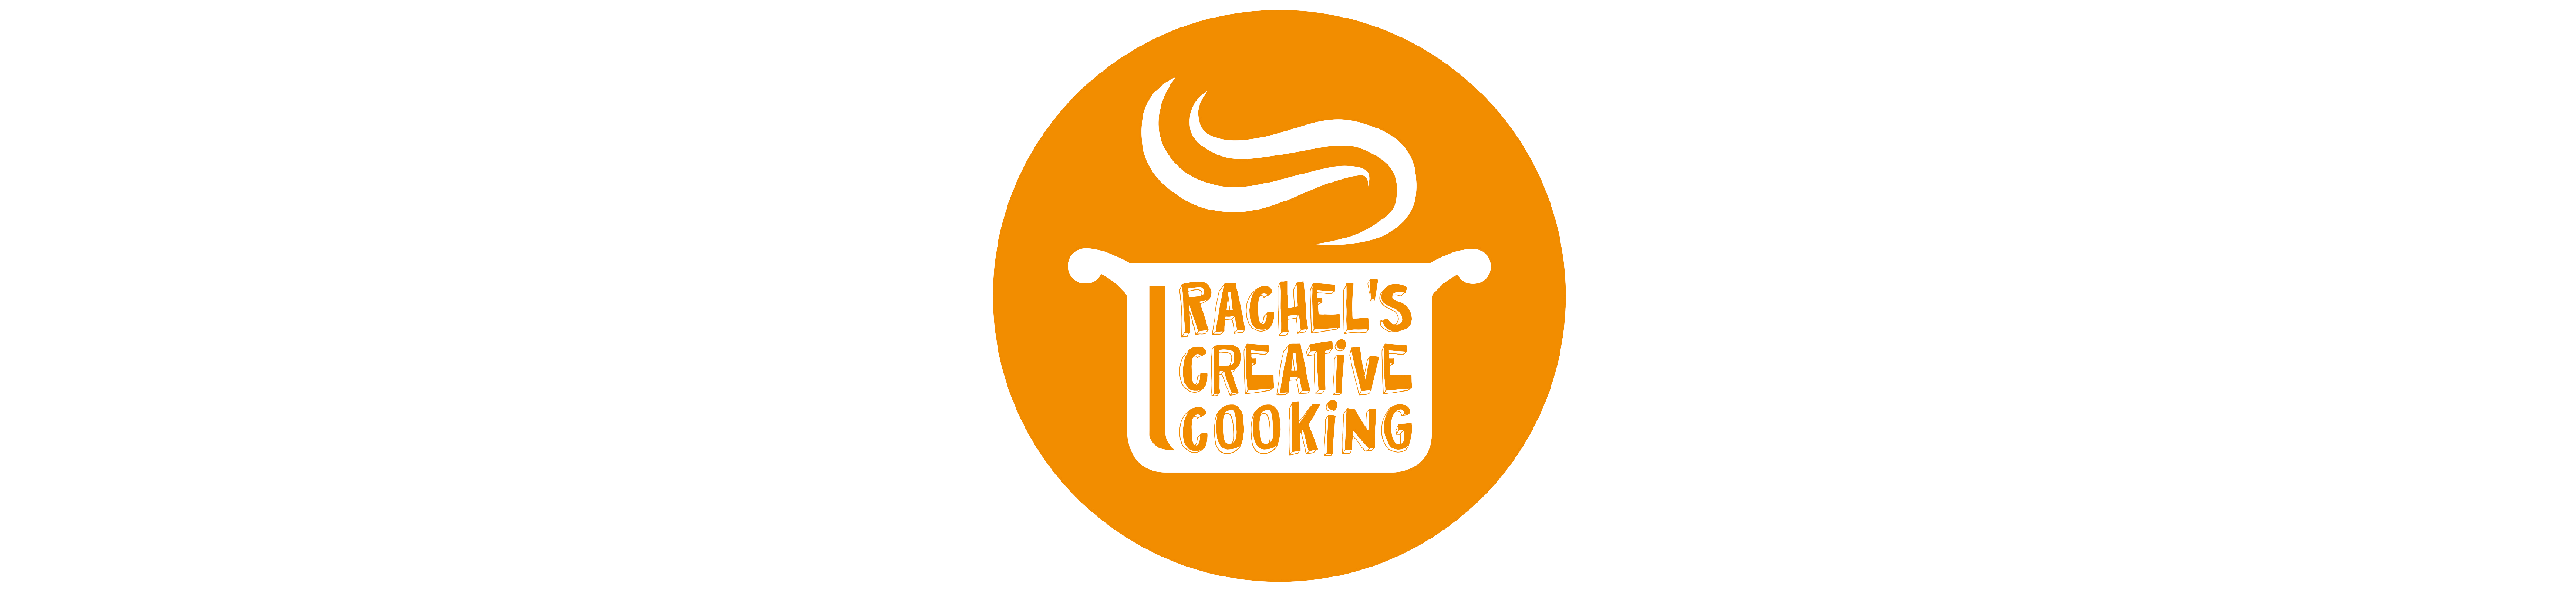 Rachel's Creative Cooking